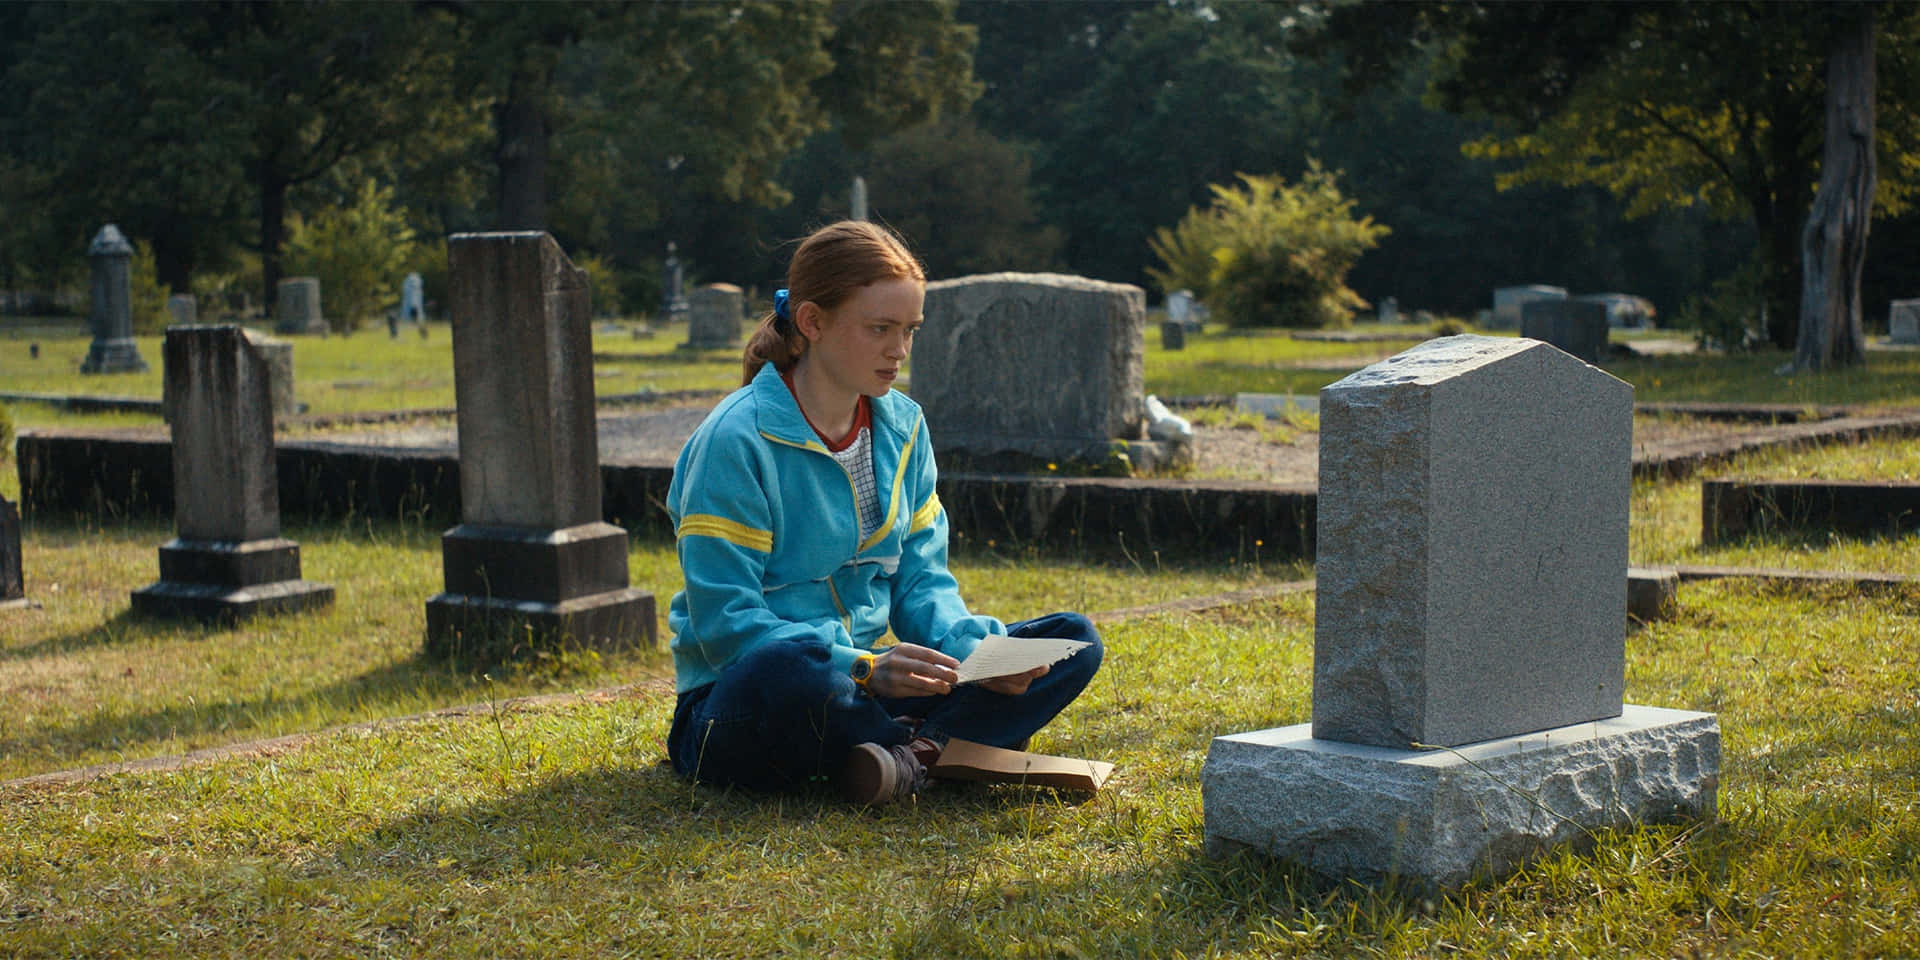 Maxmaryfield En El Cementerio - Imagen De La Temporada 4 De Stranger Things.